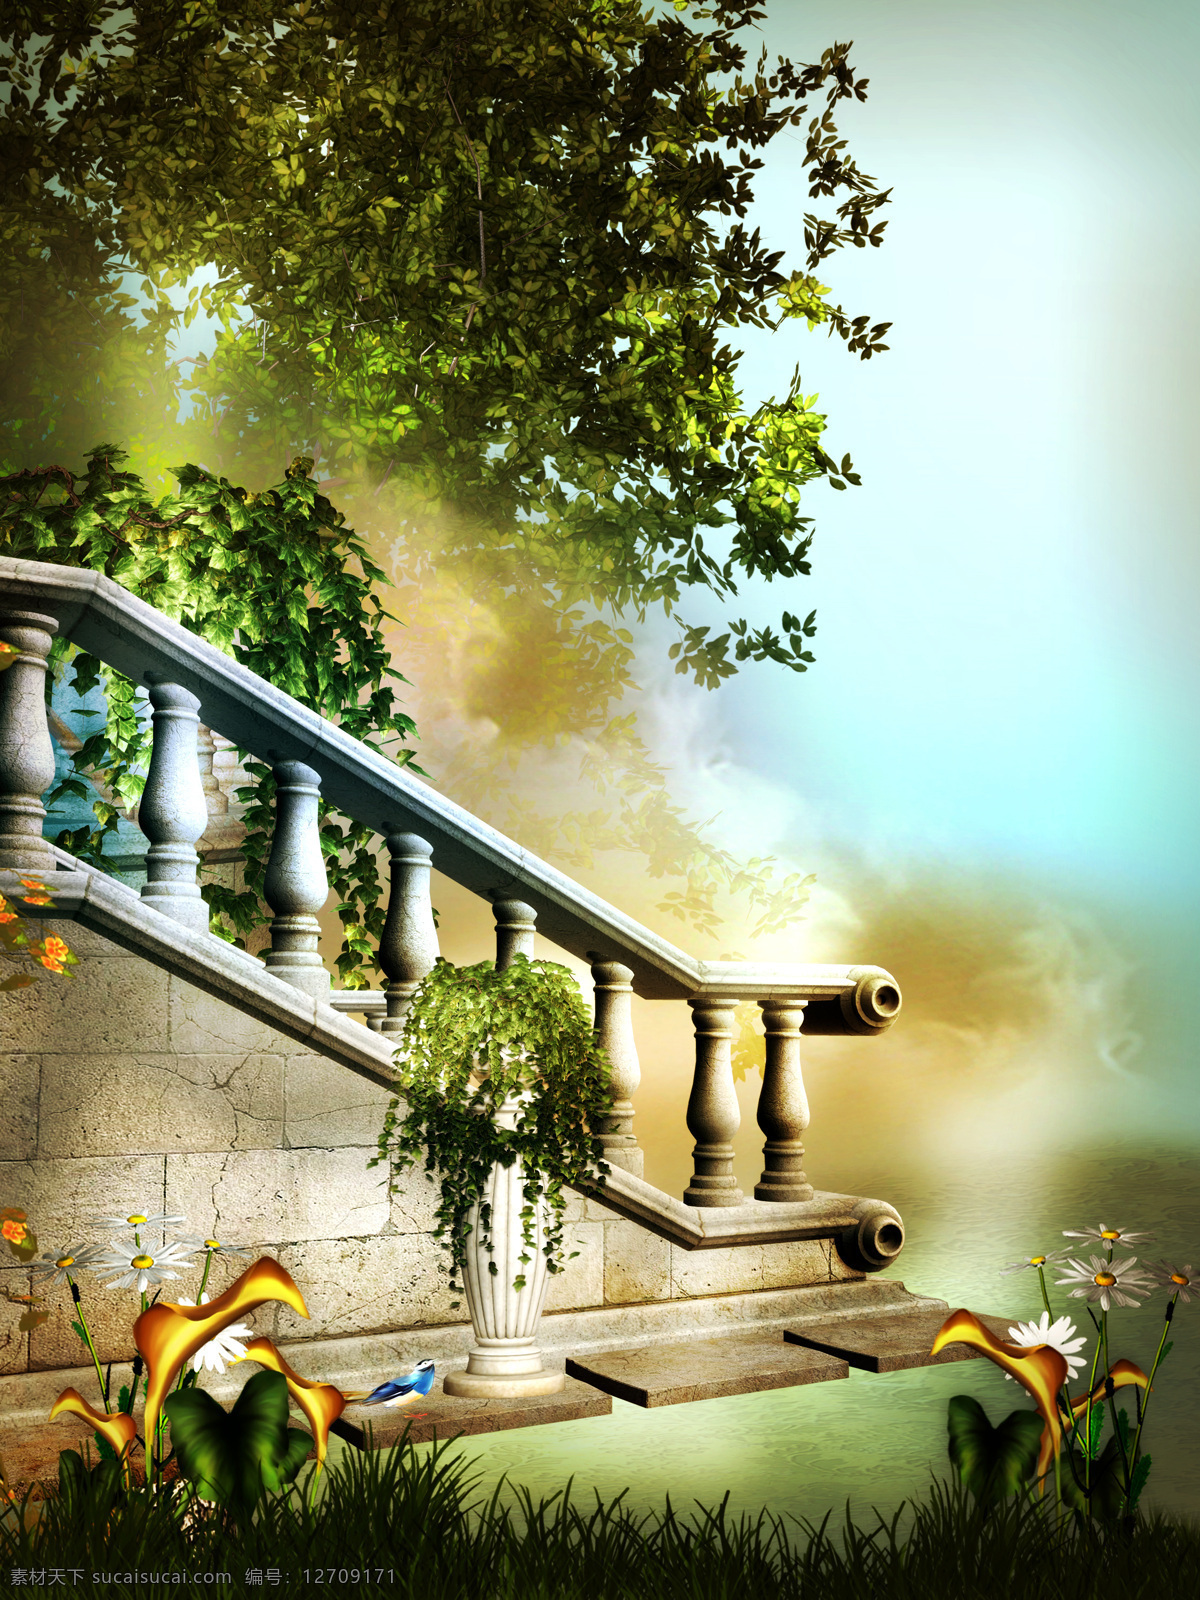 爱情 花园 爱情花园 梦幻 唯美 鲜花 楼梯 扶梯 绿树 欧式建筑 山水风景 风景图片